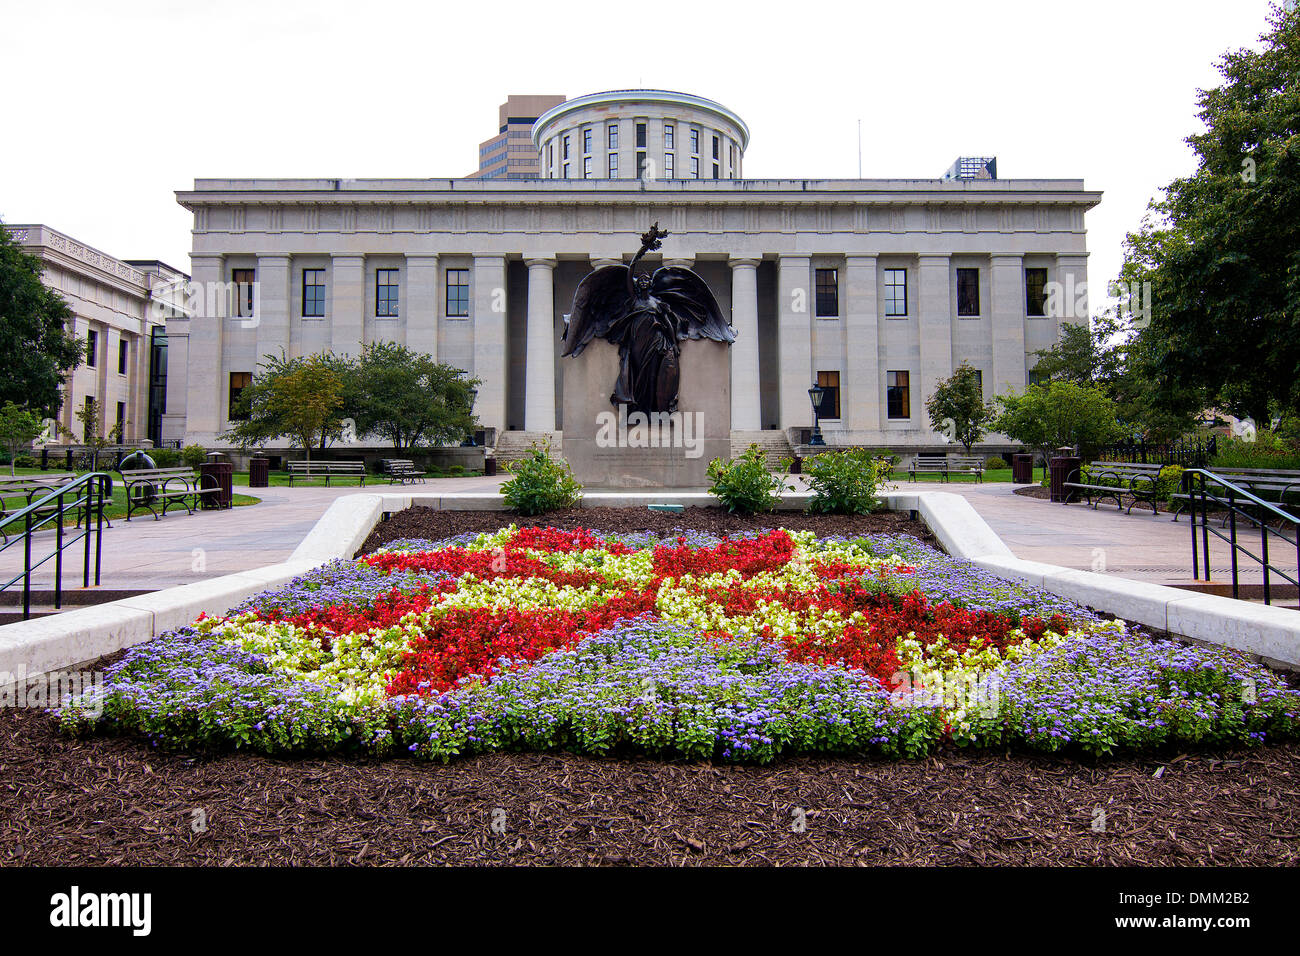 La Legislatura Estatal de Ohio en Columbus, Ohio, EE.UU. Foto de stock